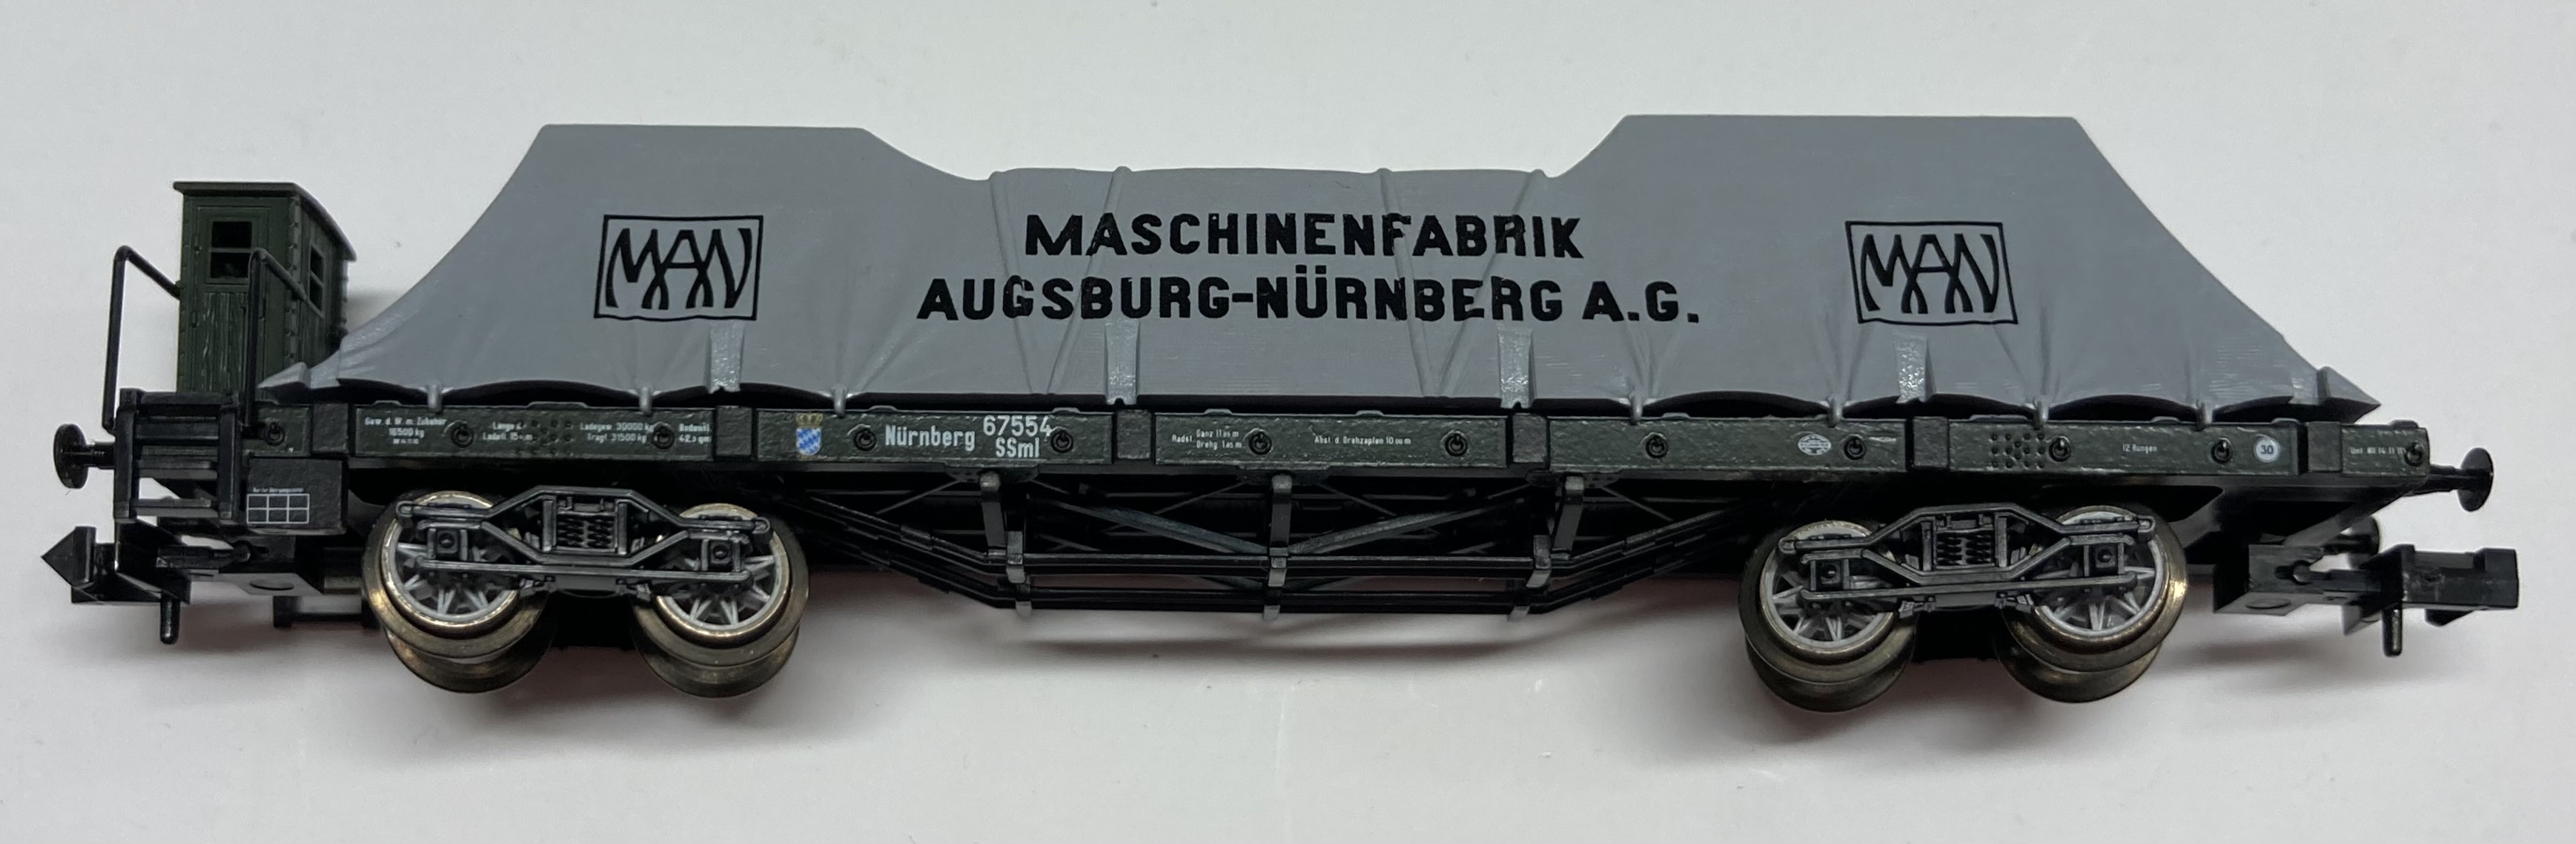 Minitrix Spur N Plattformwagen, Gattung SSml, 4-achsig, mit Plane (schwarz) ´MASCHINENFABRIK AUGSBURG- NÜRNBERG A.G.´